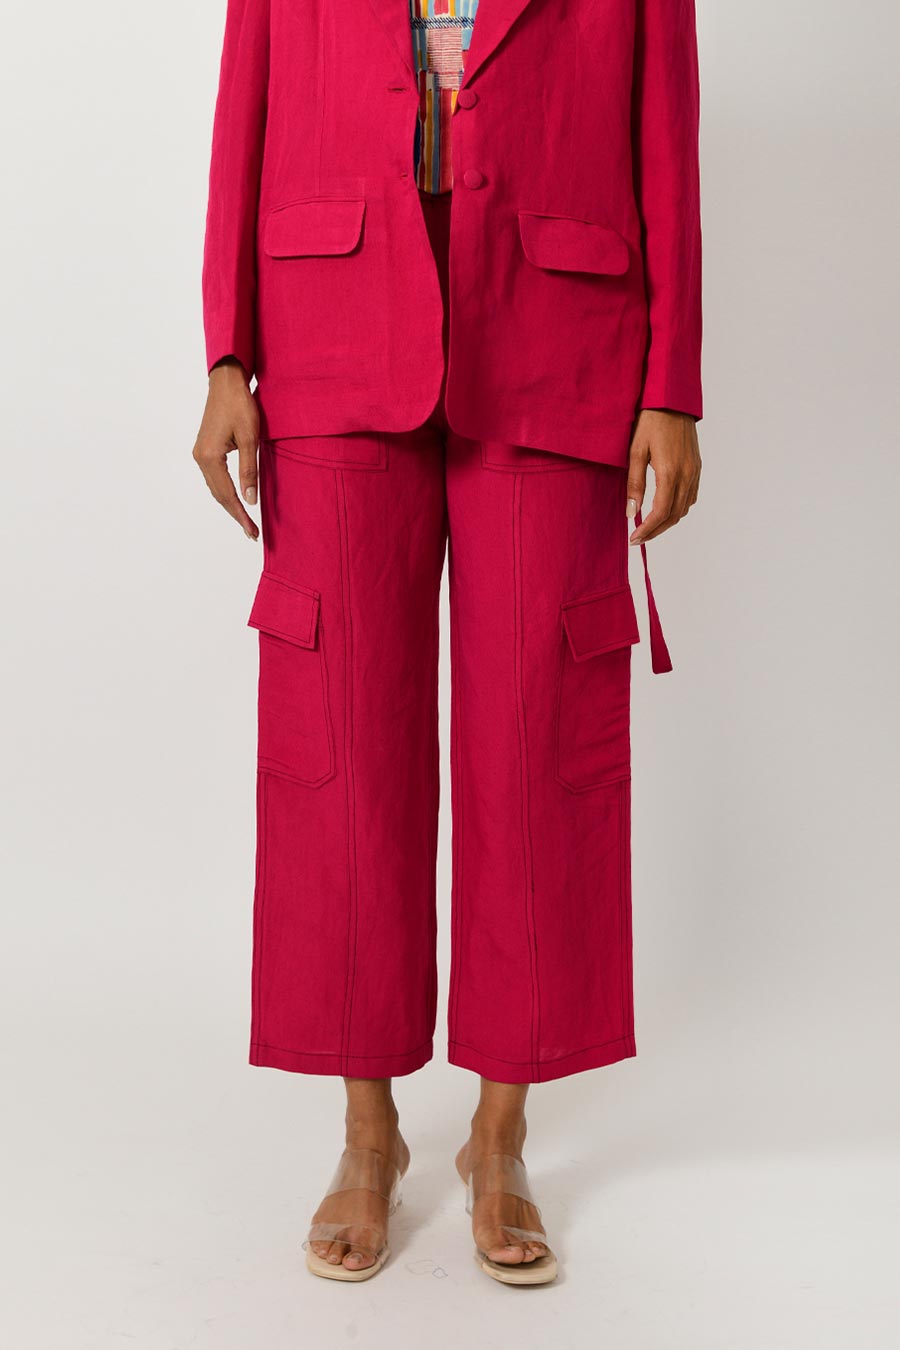 Viva Magenta Linen Blazer & Pant Set With Scribble Top